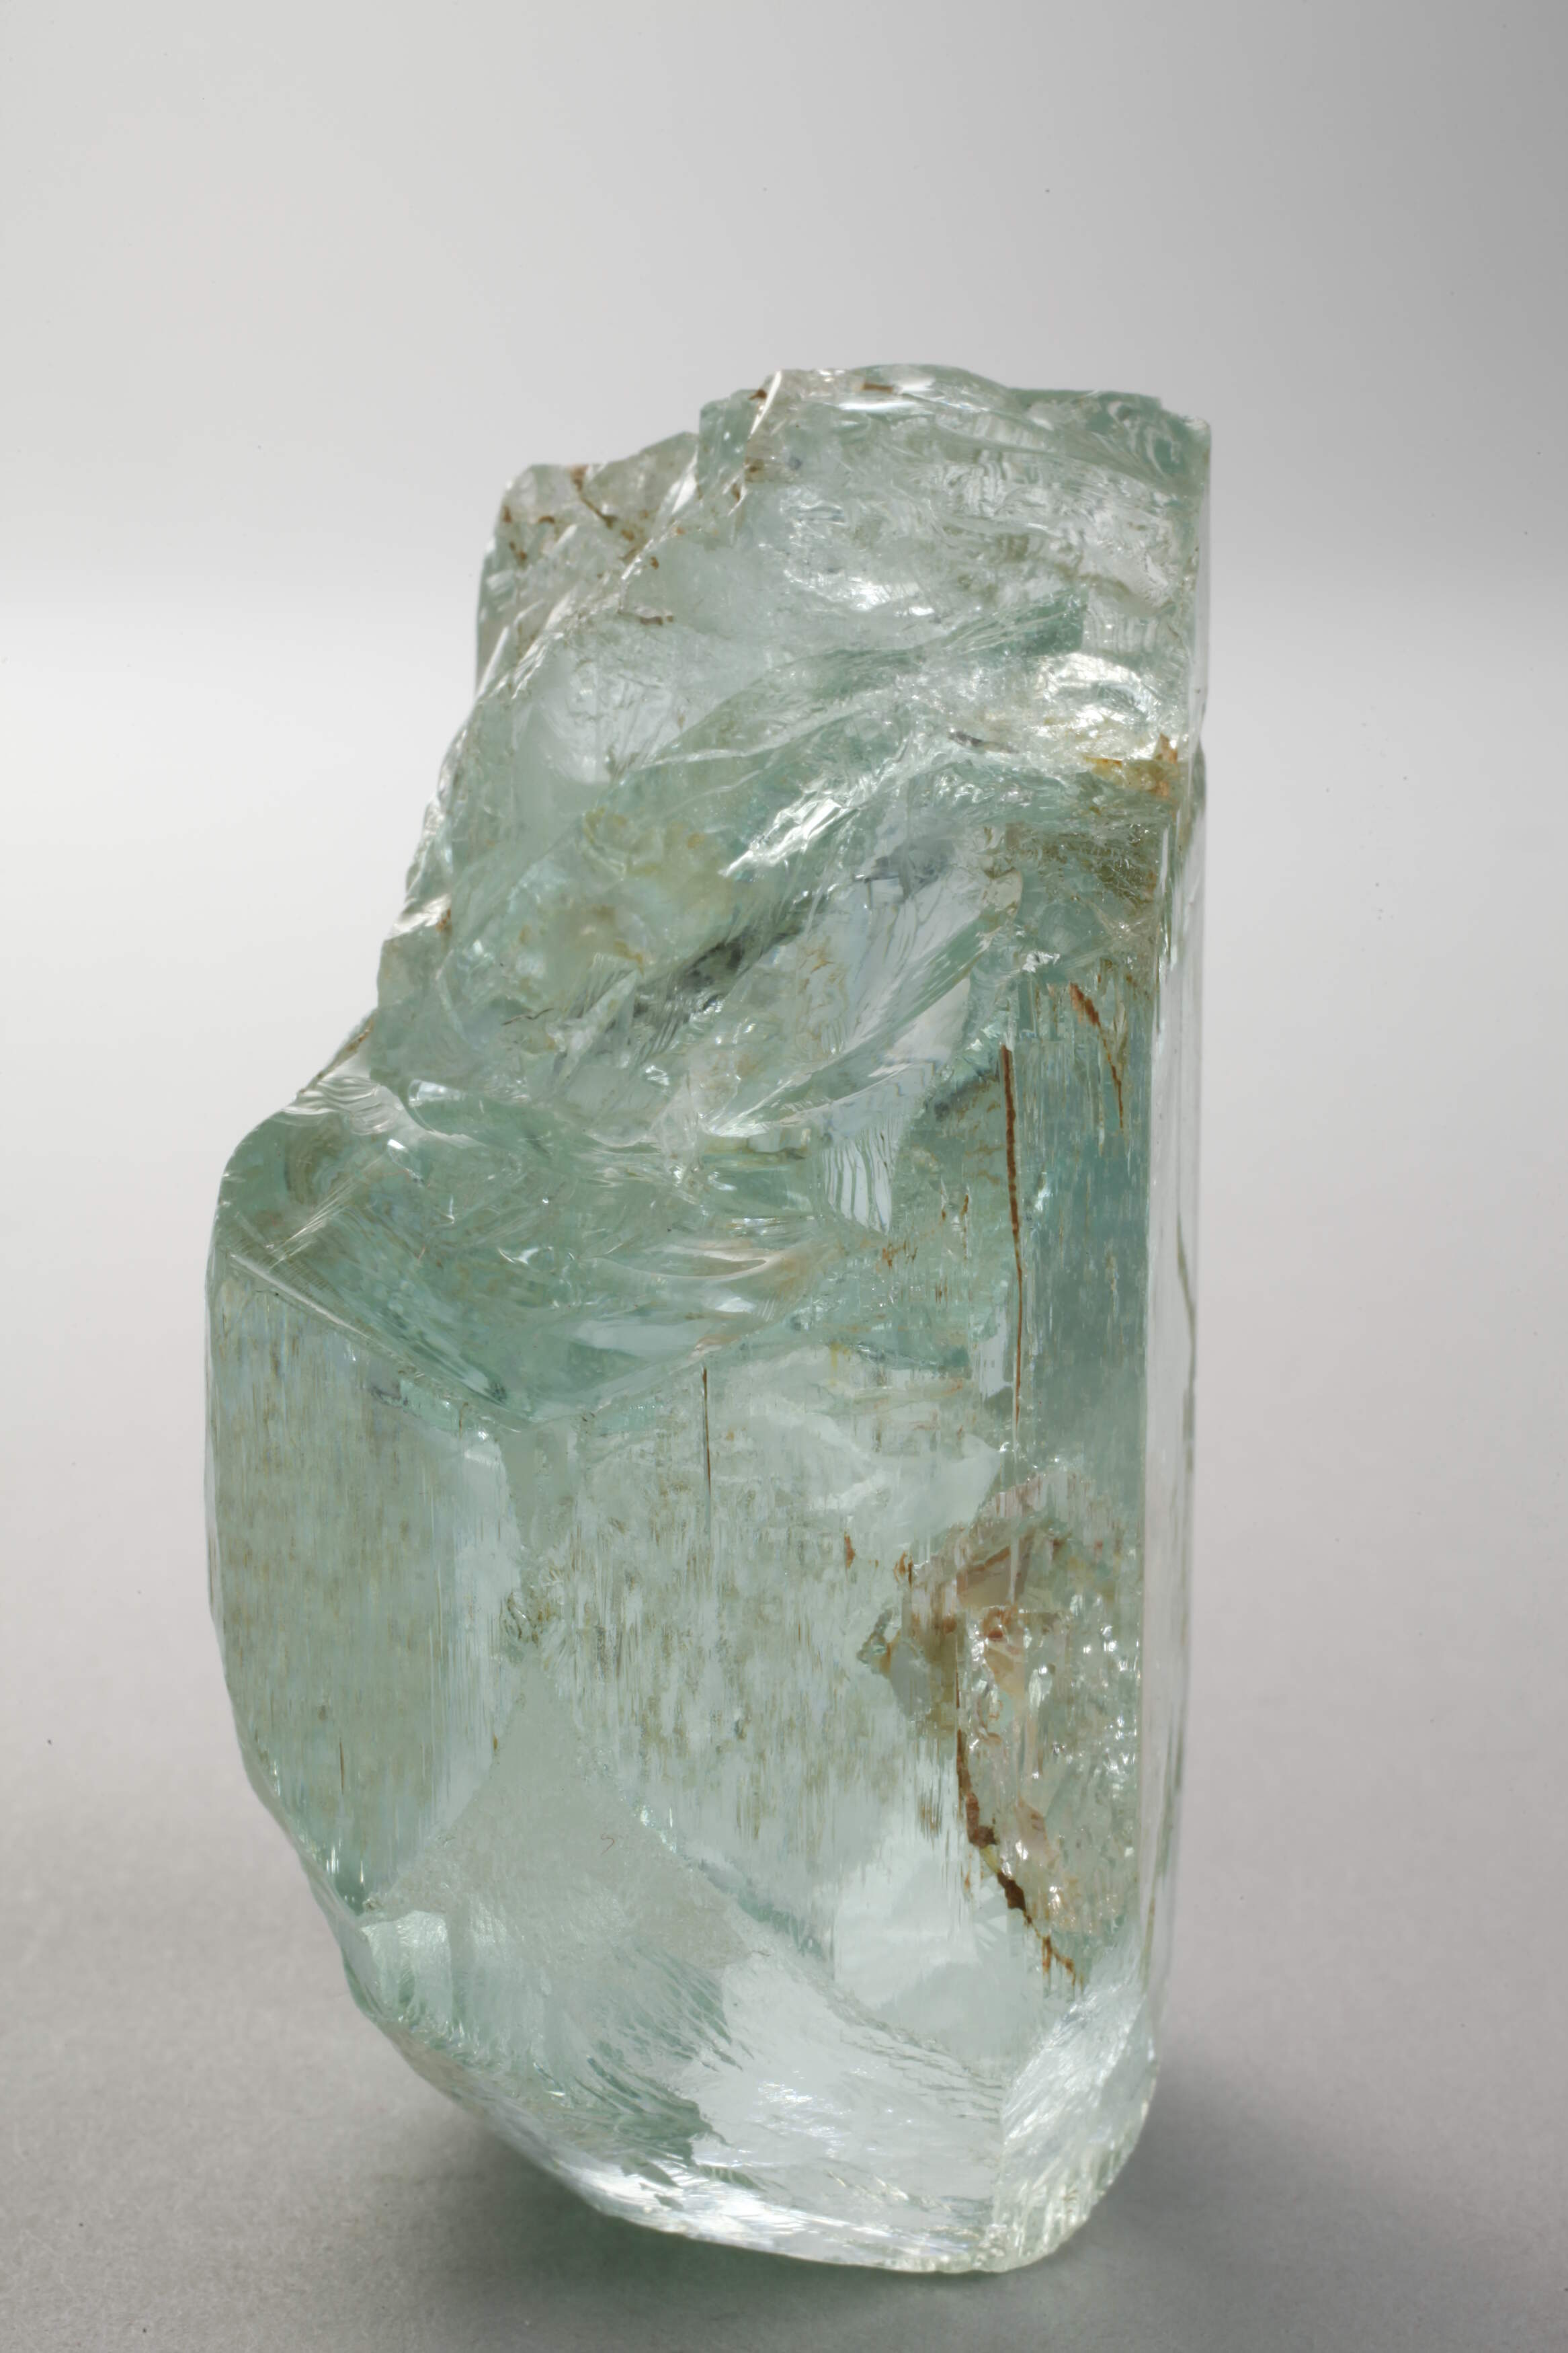 Large aquamarine crystal - Image 3 of 6